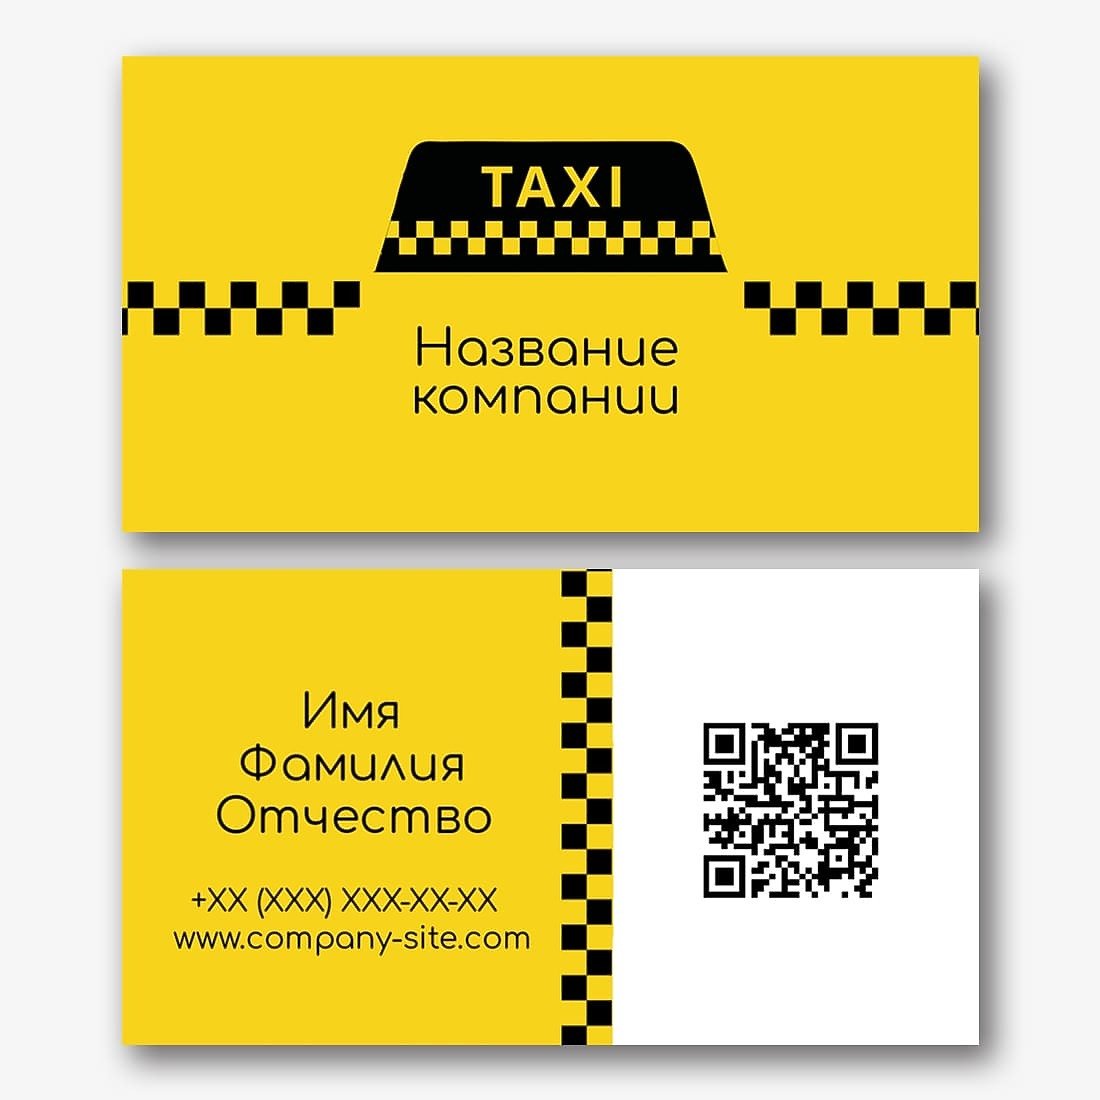 Бесплатные визитки такси. Визитка такси. Макет визитки такси. Визитки такси прикольные. Красивые визитки такси.